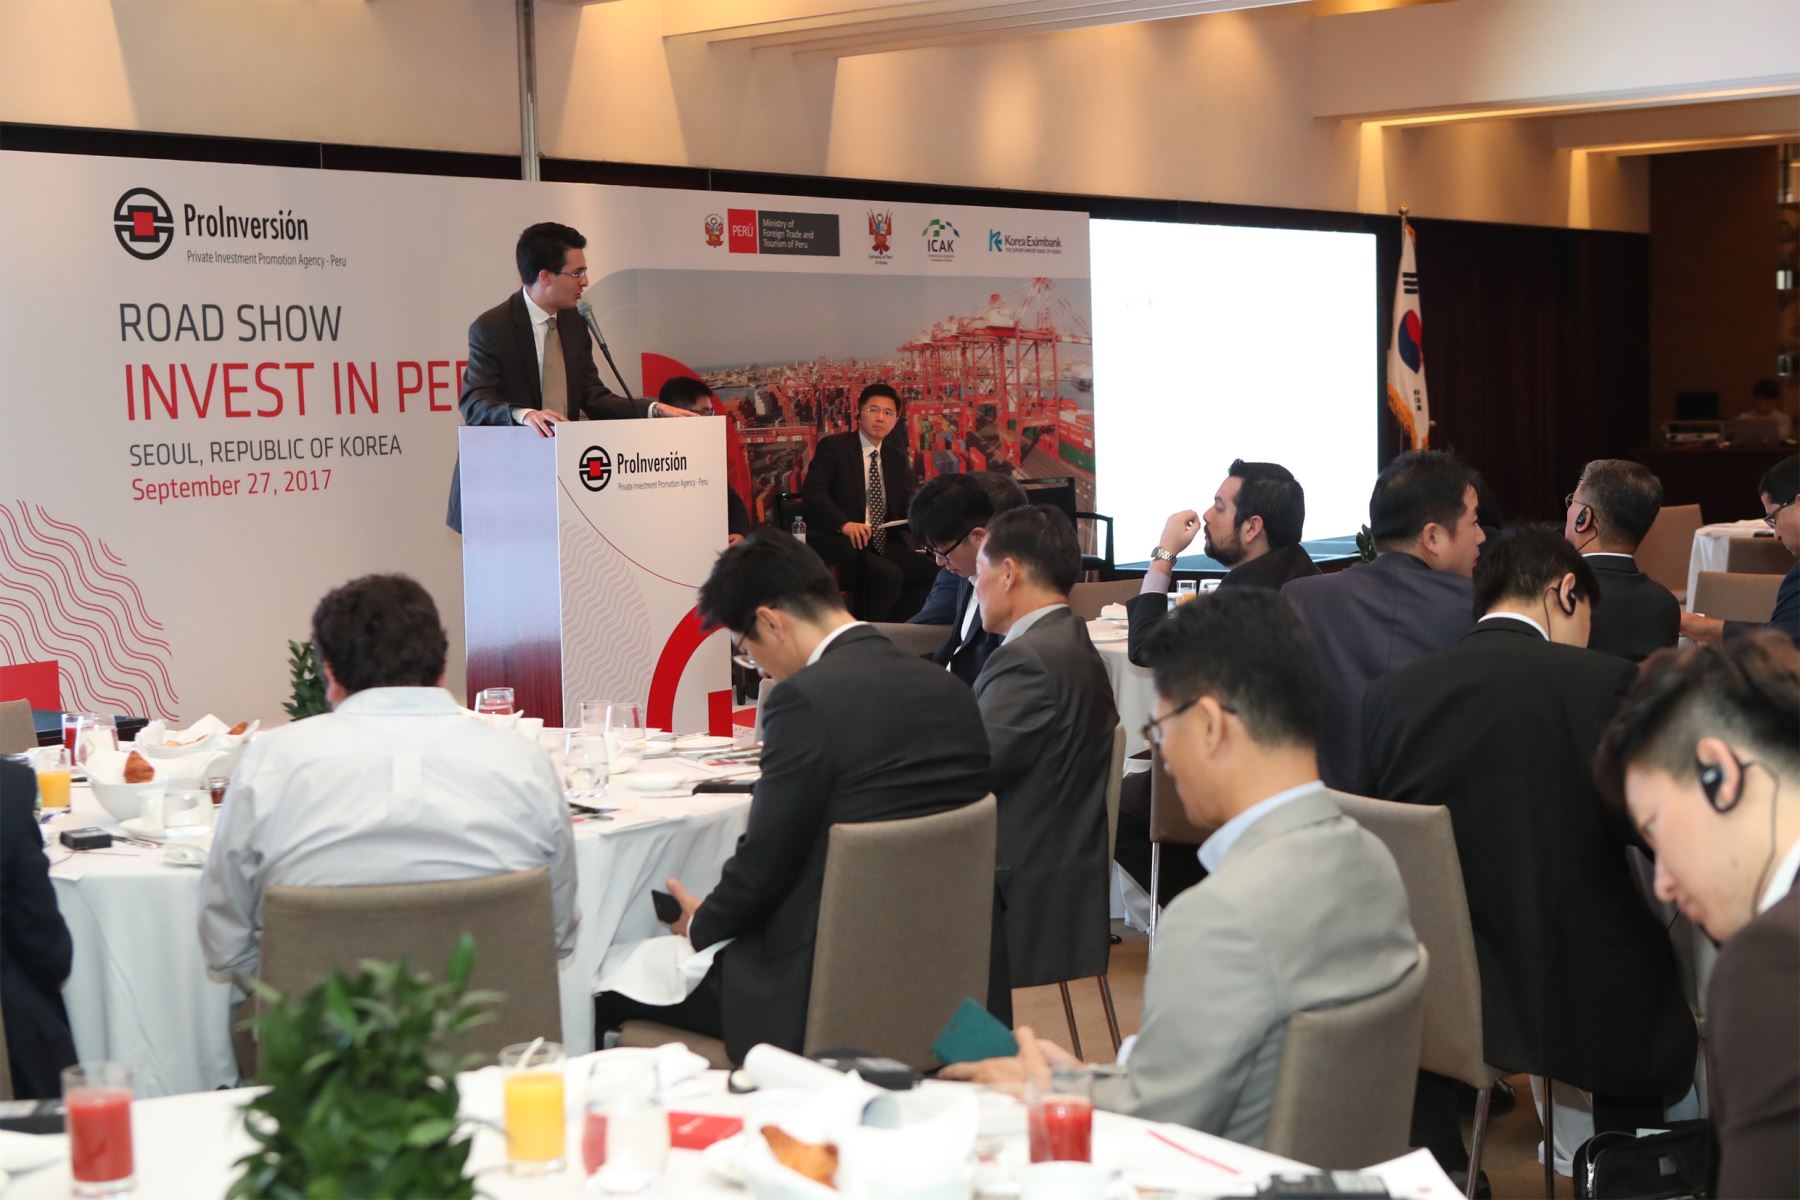 César Martín Peñaranda atendió un evento empresarial que contó con la participación de 60 representantes de 40 empresas surcoreanas, como Yooshin, Daewoo y Hyundai.